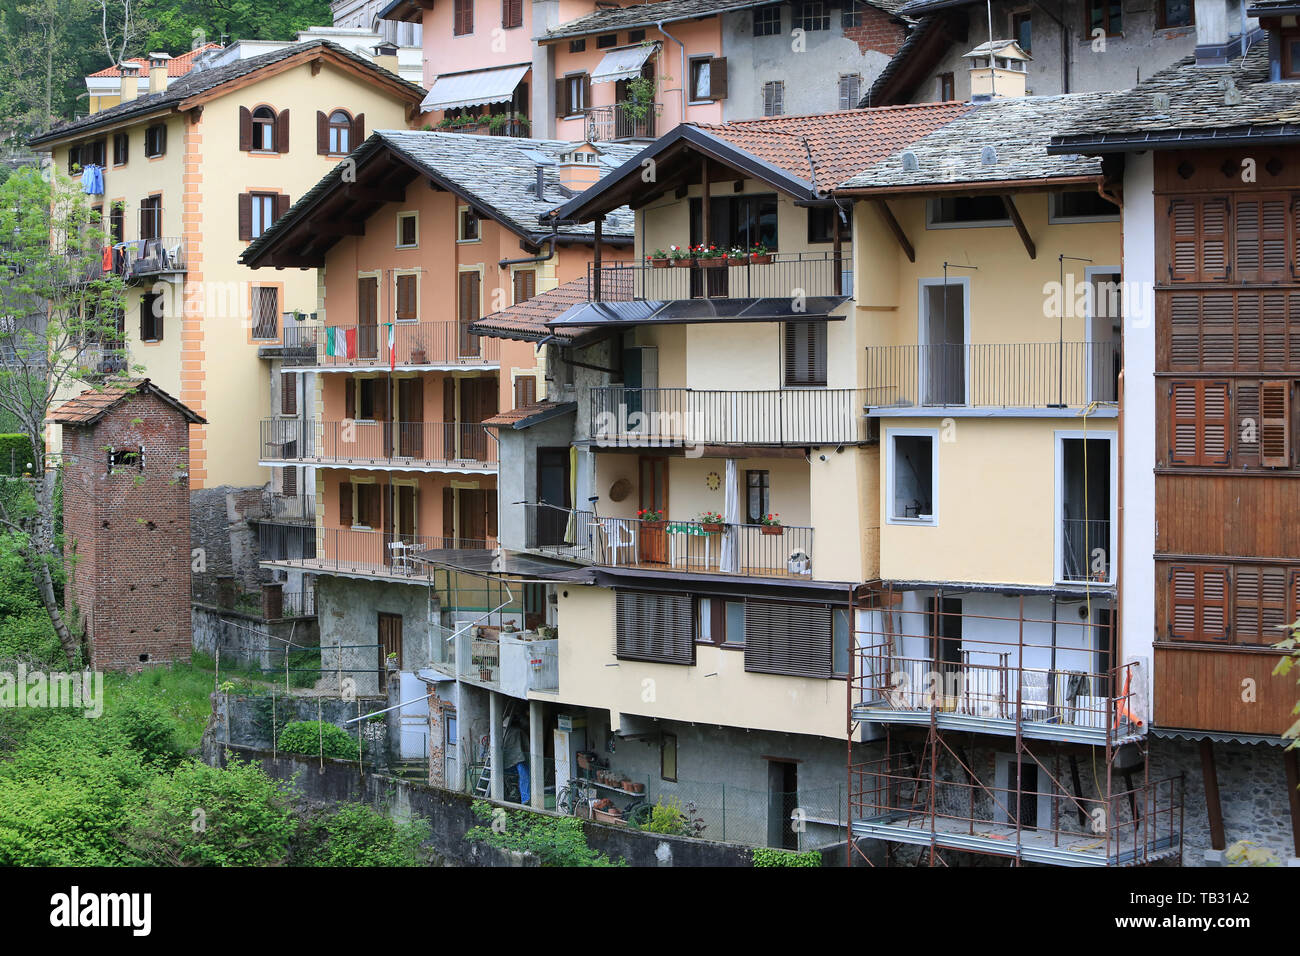 Maisons typiques sur la rivière de Mastallone de Varallo Sesia. Italie. Tipiche Case sul fiume Mastallone di Varallo Sesia. L'Italia. L'Italia. Foto Stock